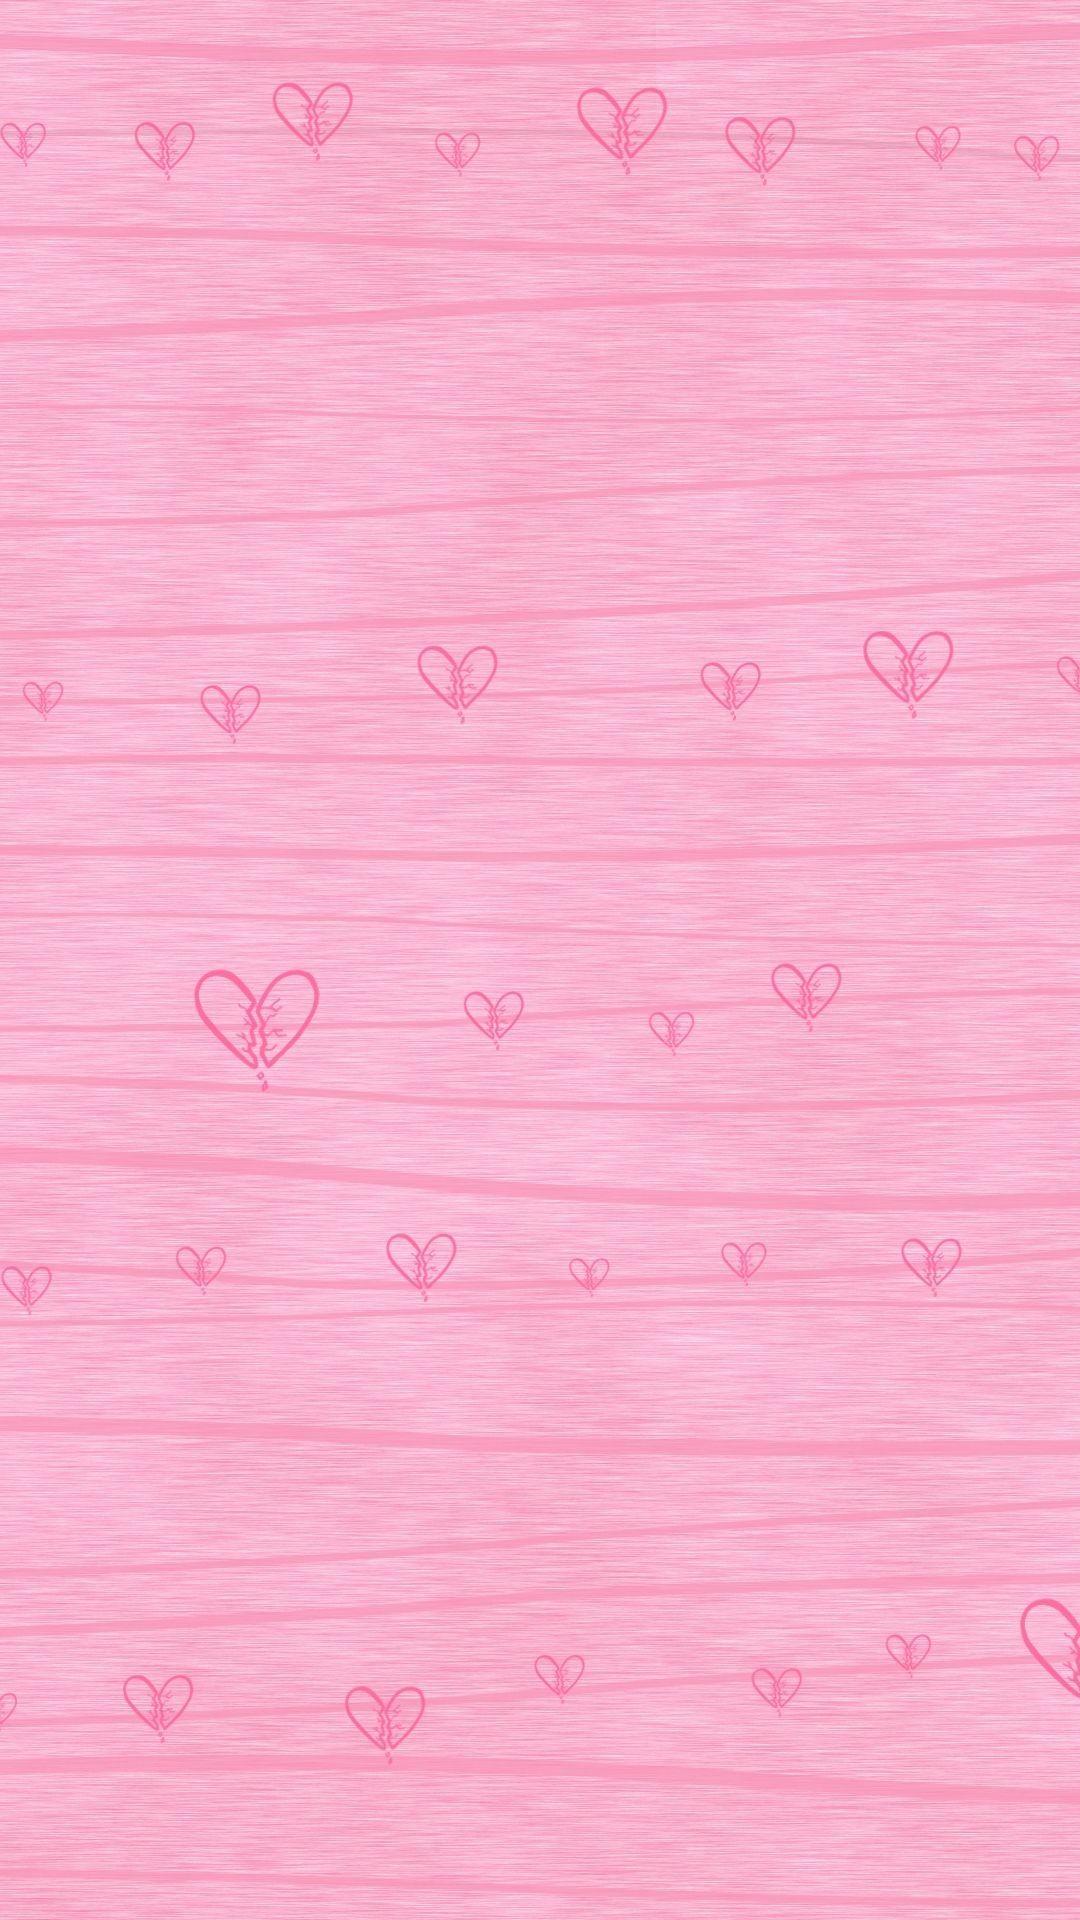 Pink Heart iPhone Wallpapers - Top Những Hình Ảnh Đẹp